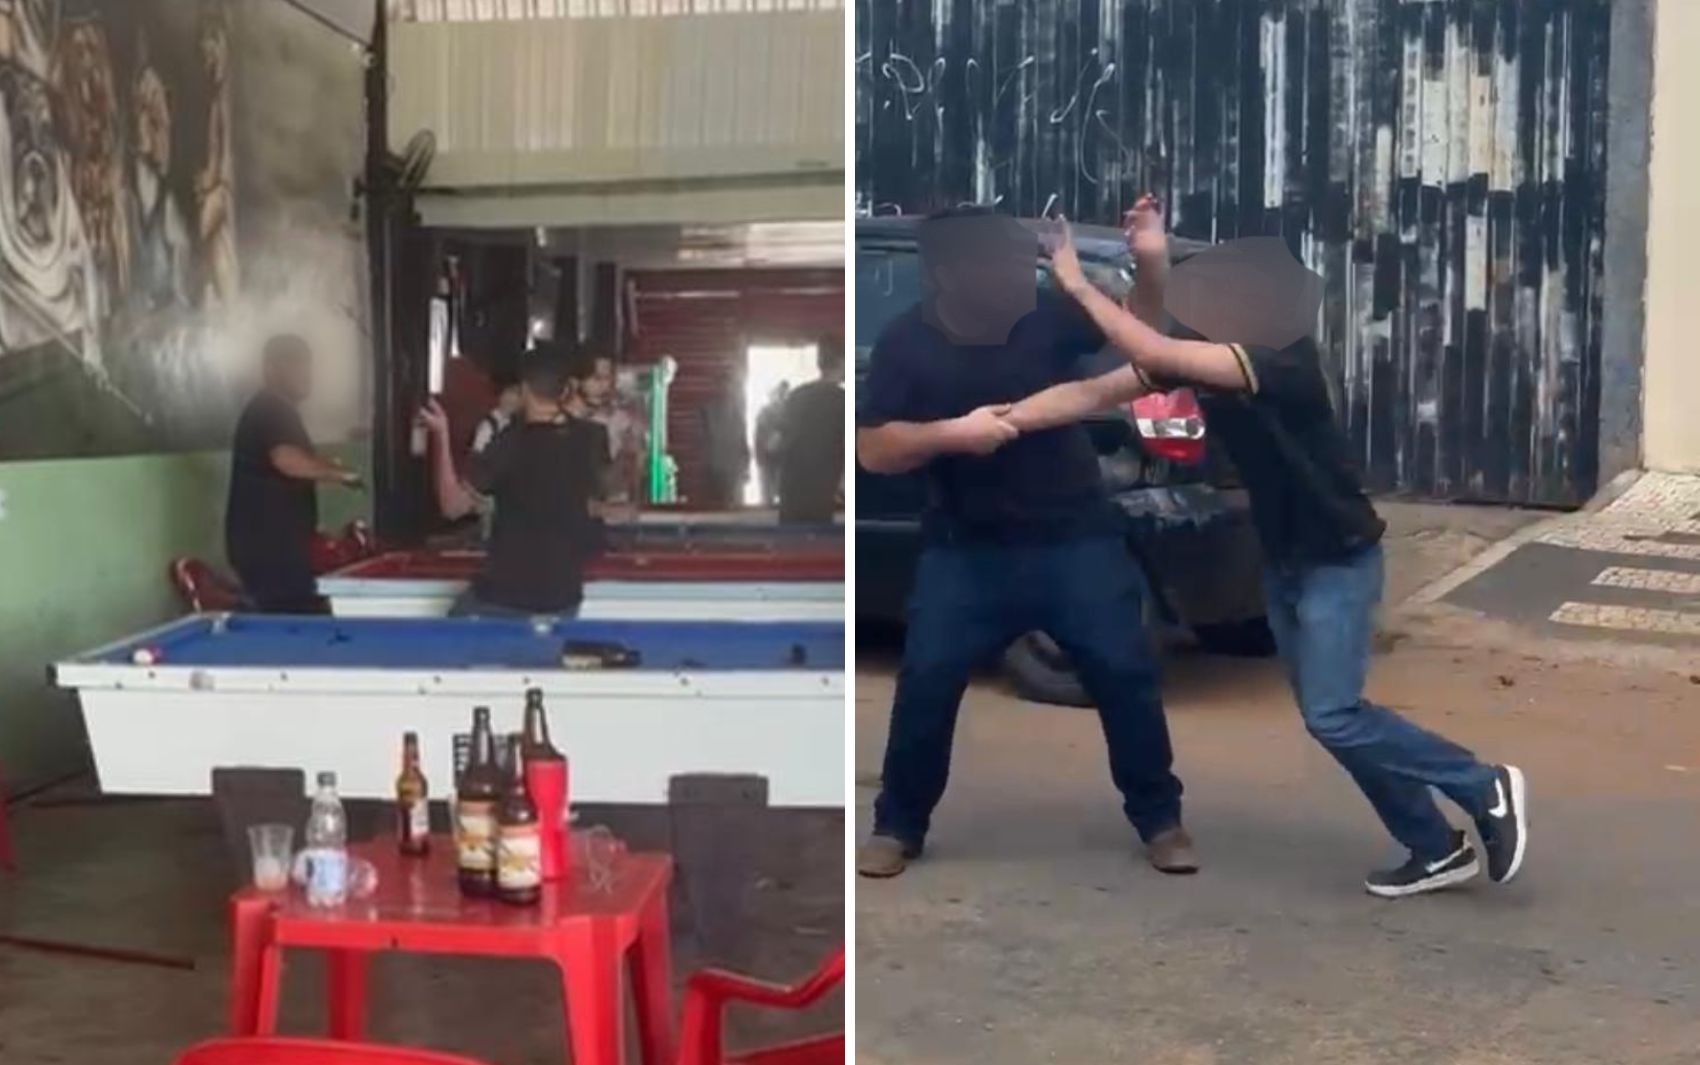 Estudantes universitários se agridem com socos e golpes de taco de sinuca durante briga em bar; vídeos